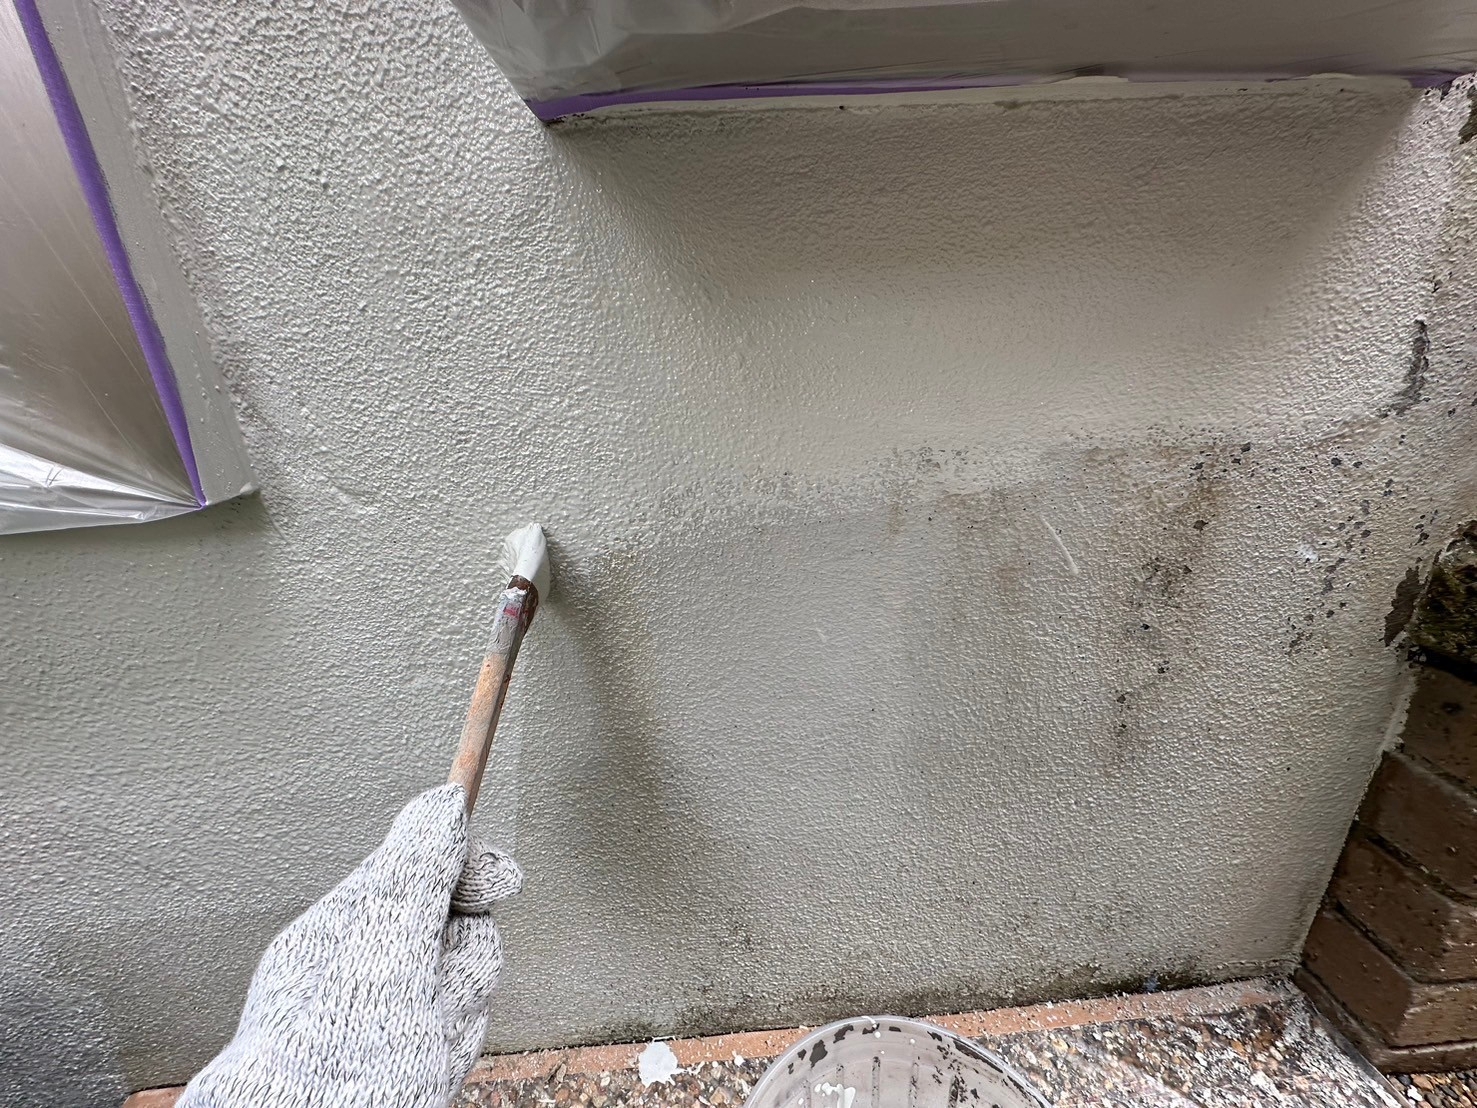 福岡県福岡市東区香椎台のN様邸で外壁にネオフレッシュティアラの多彩色塗料を吹き付けて塗装工事を行います。2/9完成です。【ホームページより】